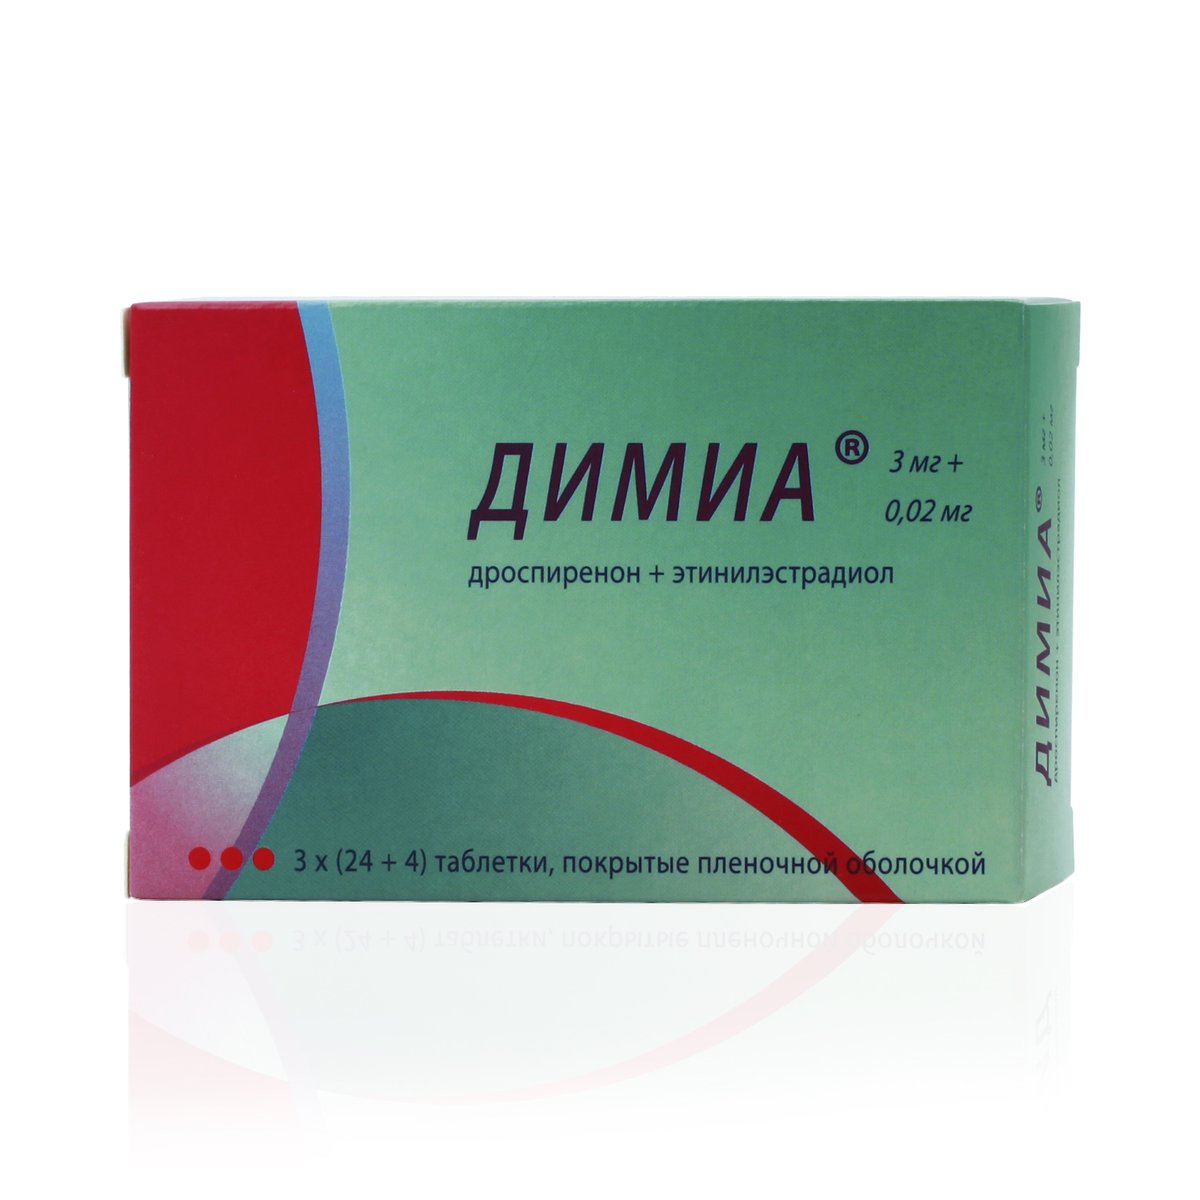 Димиа (таблетки, 84 шт, 3 + 0,02 мг + мг) - цена,  онлайн в .